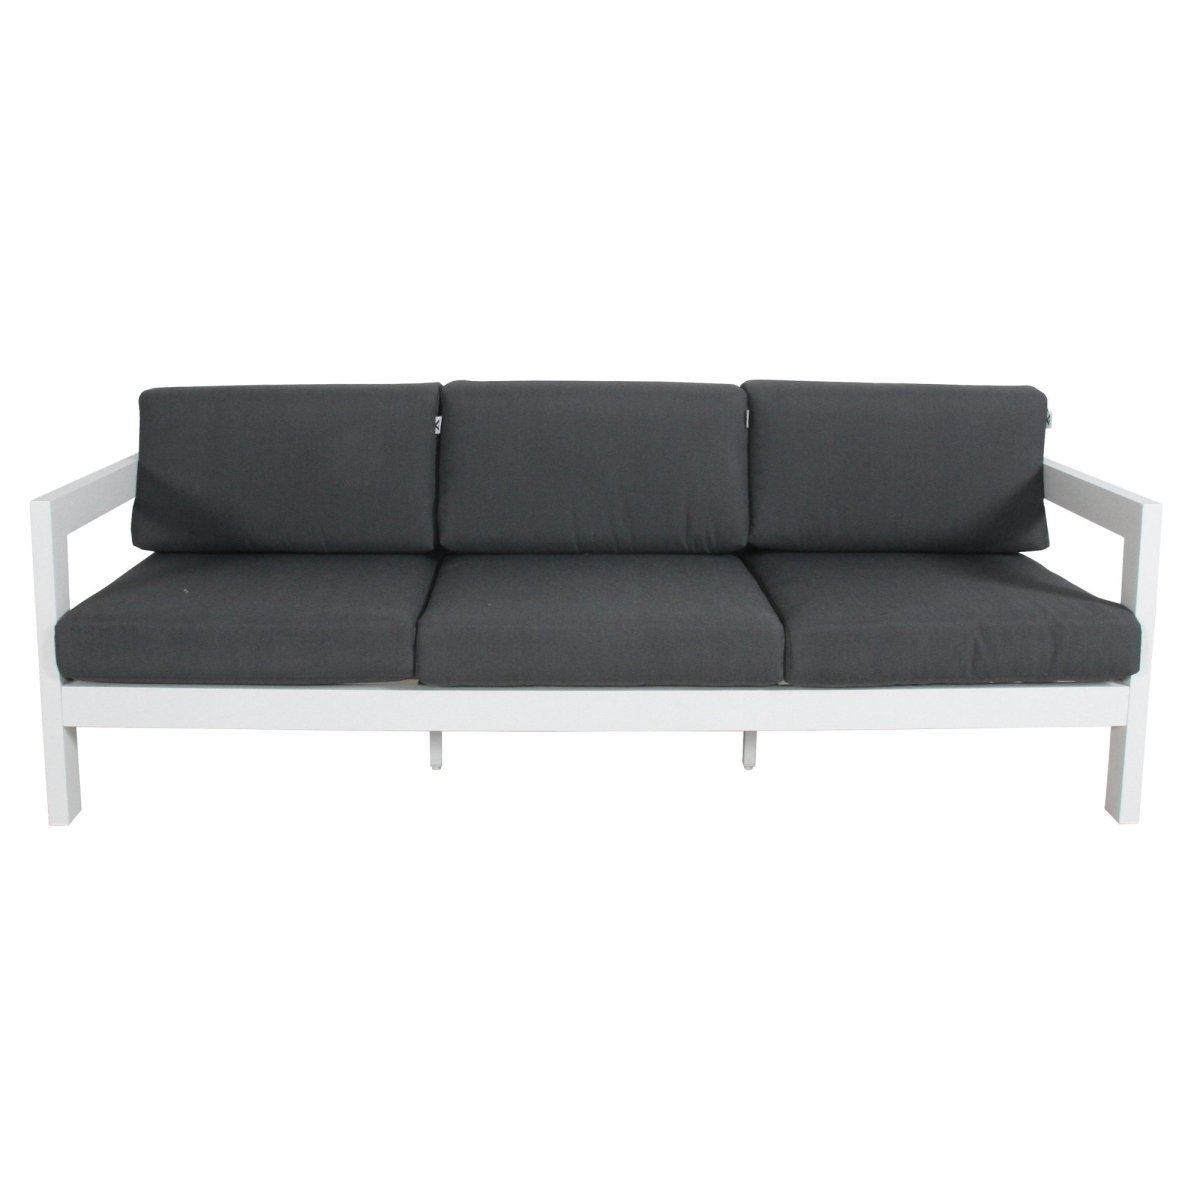 Outie 4pc Set 1+1+3 Seater Outdoor Sofa Lounge Coffee Table Aluminium White - Outdoorium